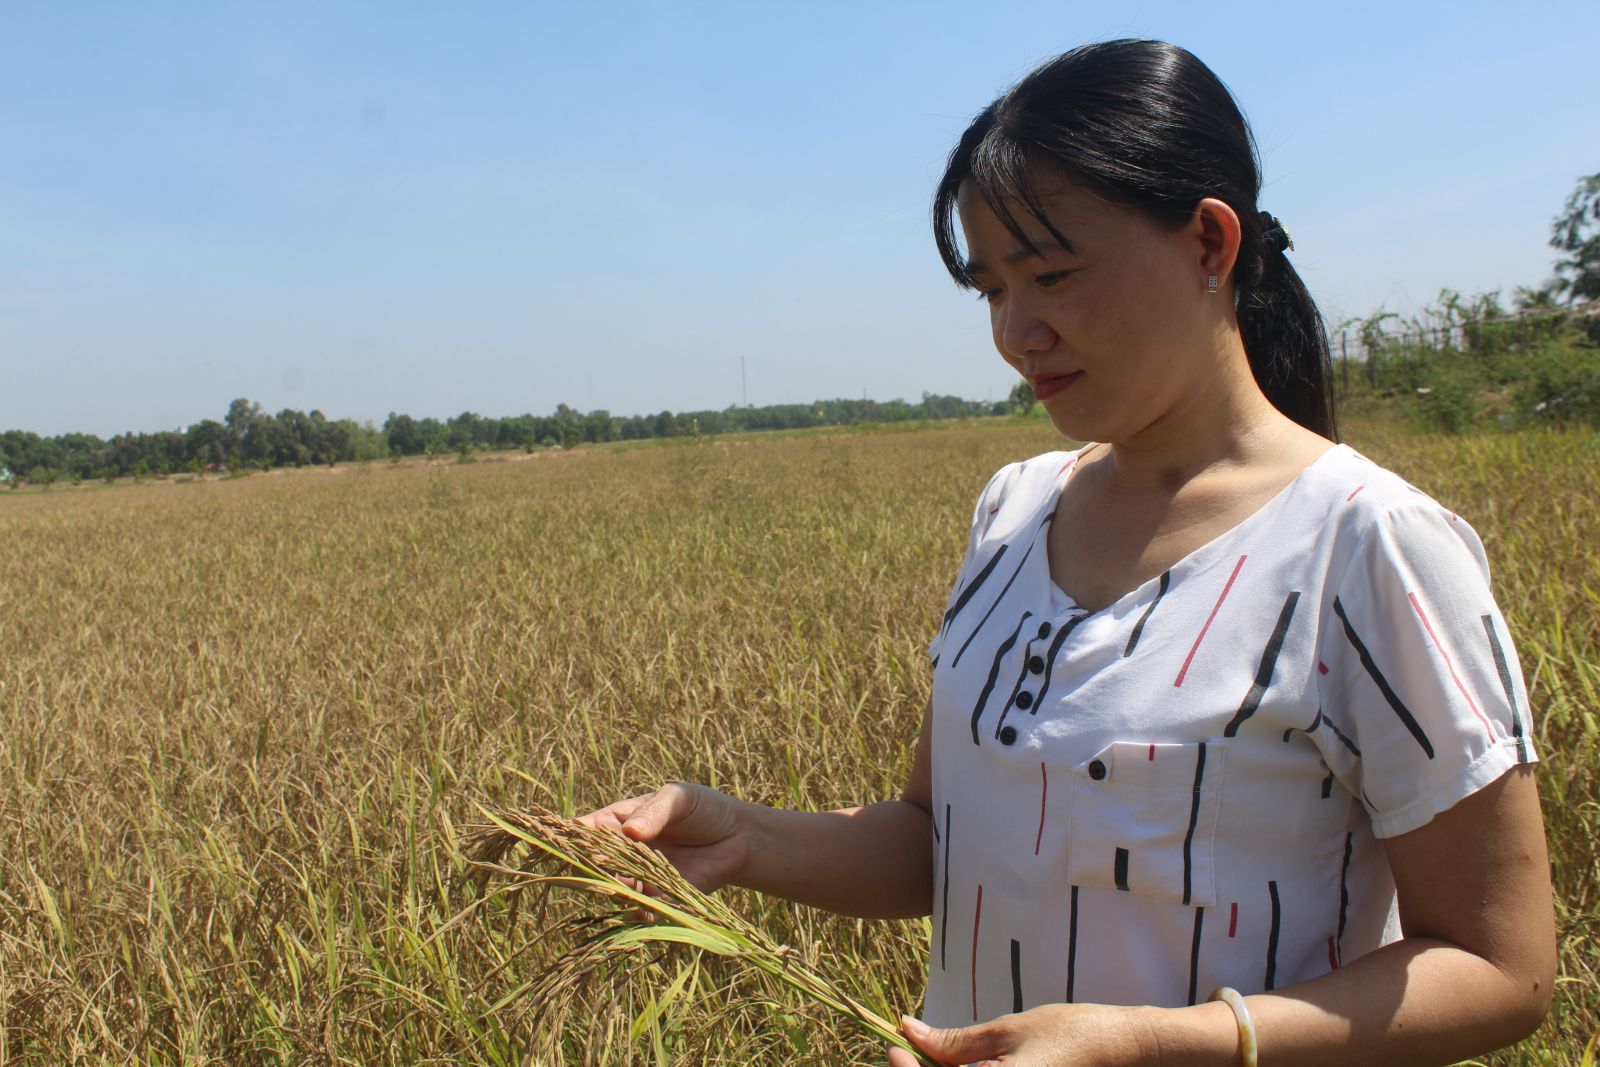 Hợp tác xã Sản xuất nông nghiệp Vĩnh Thuận sản xuất 5ha lúa hữu cơ, góp phần đem lại sản phẩm sạch, an toàn cho người tiêu dùng